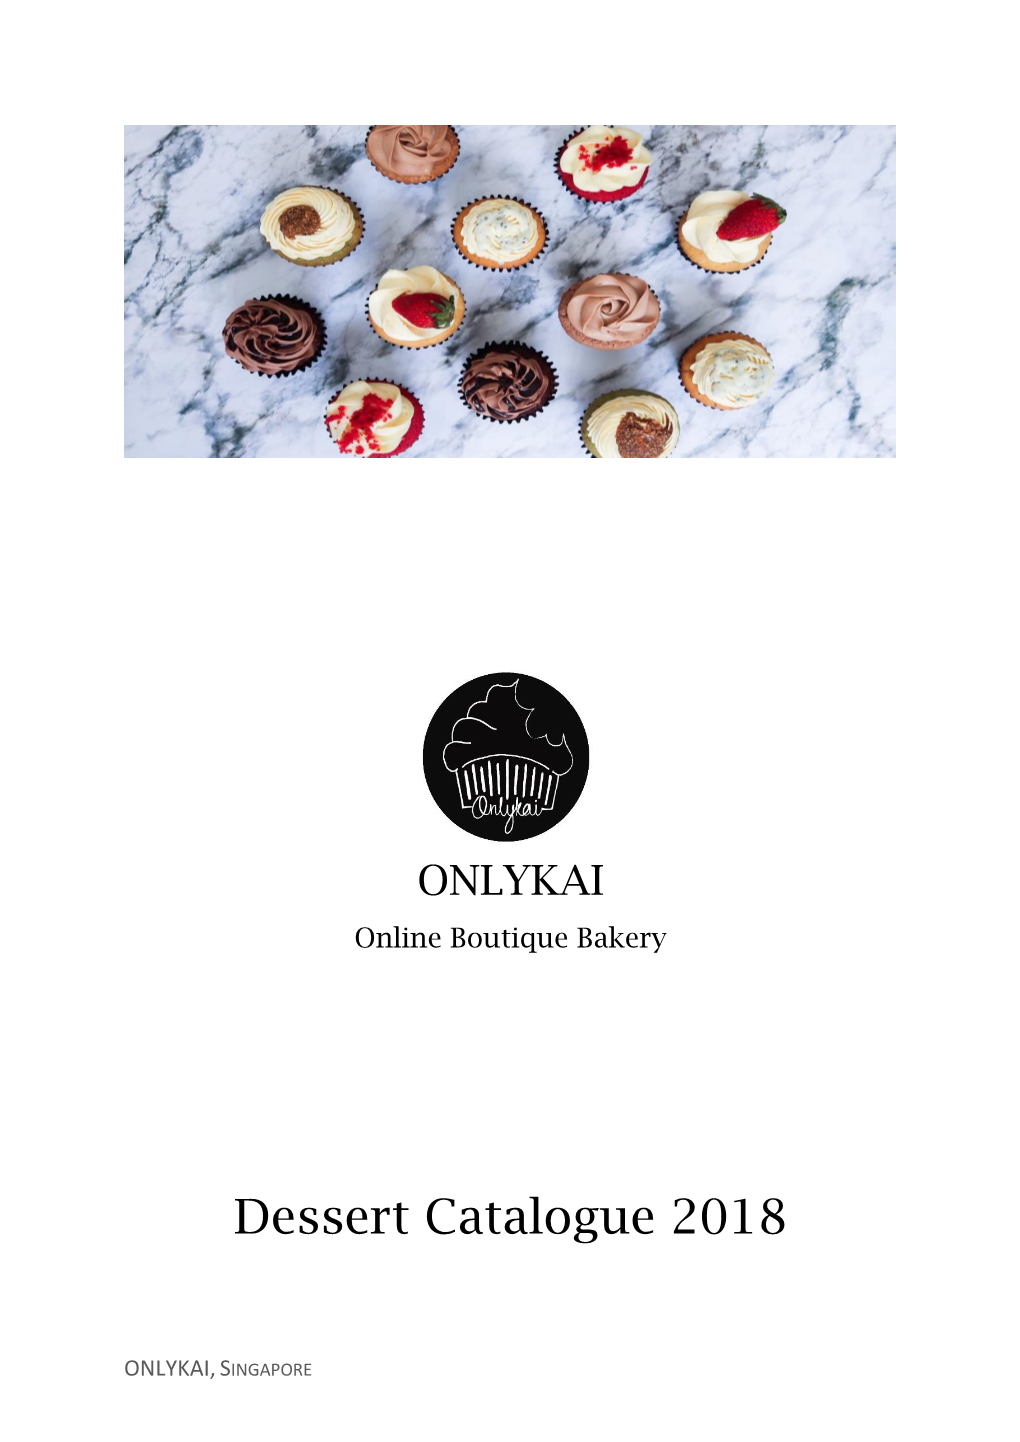 Dessert Catalogue 2018